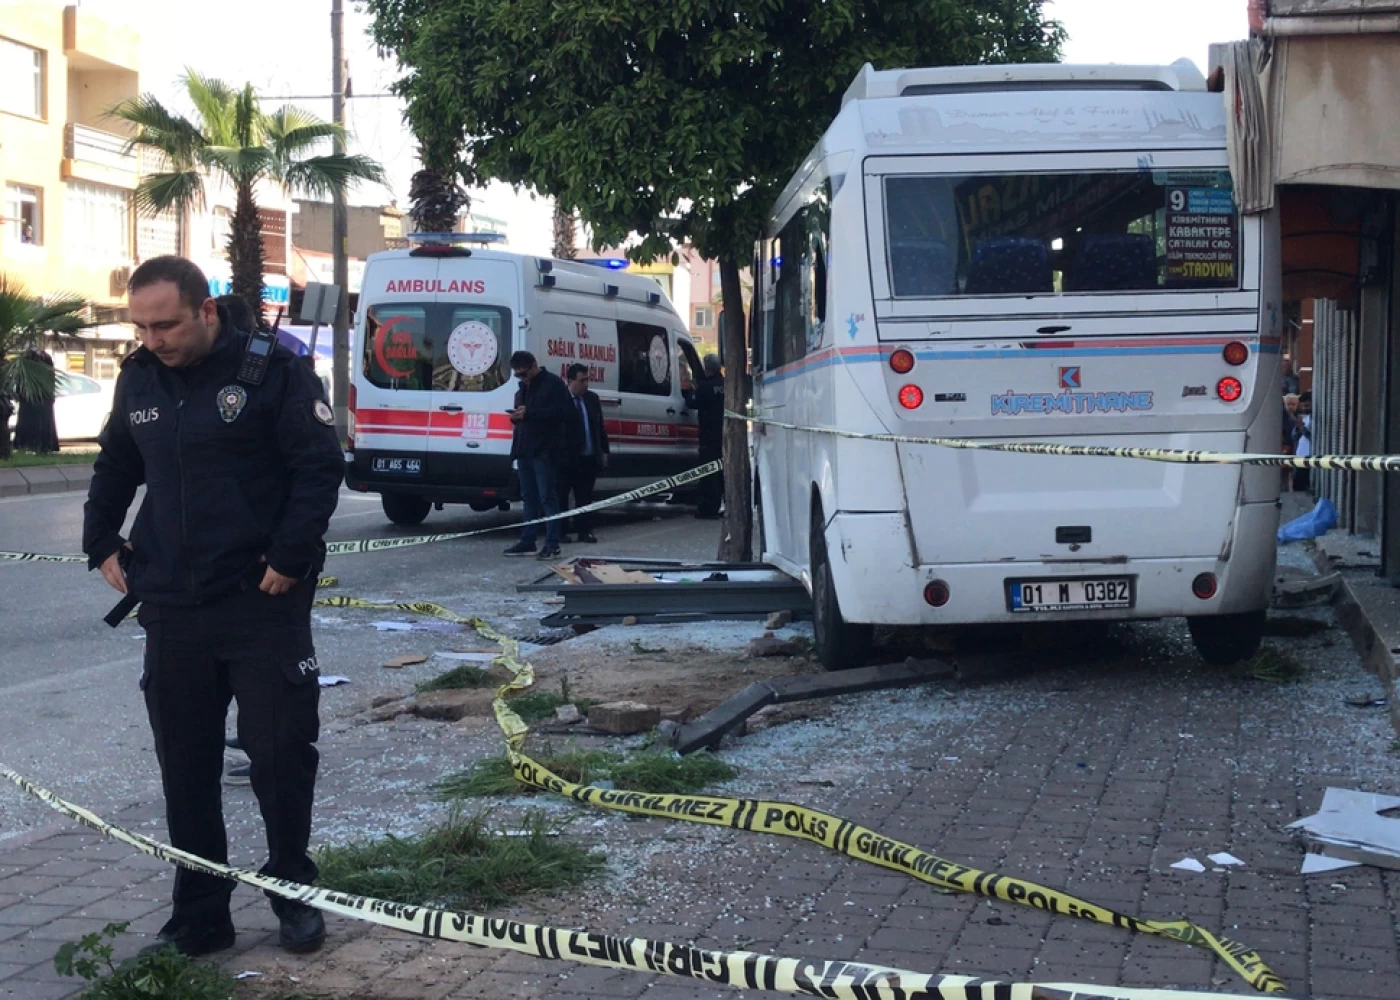 Türkiyədə mikroavtobus dayanacağa çırpıldı - Ölən və yaralılar var